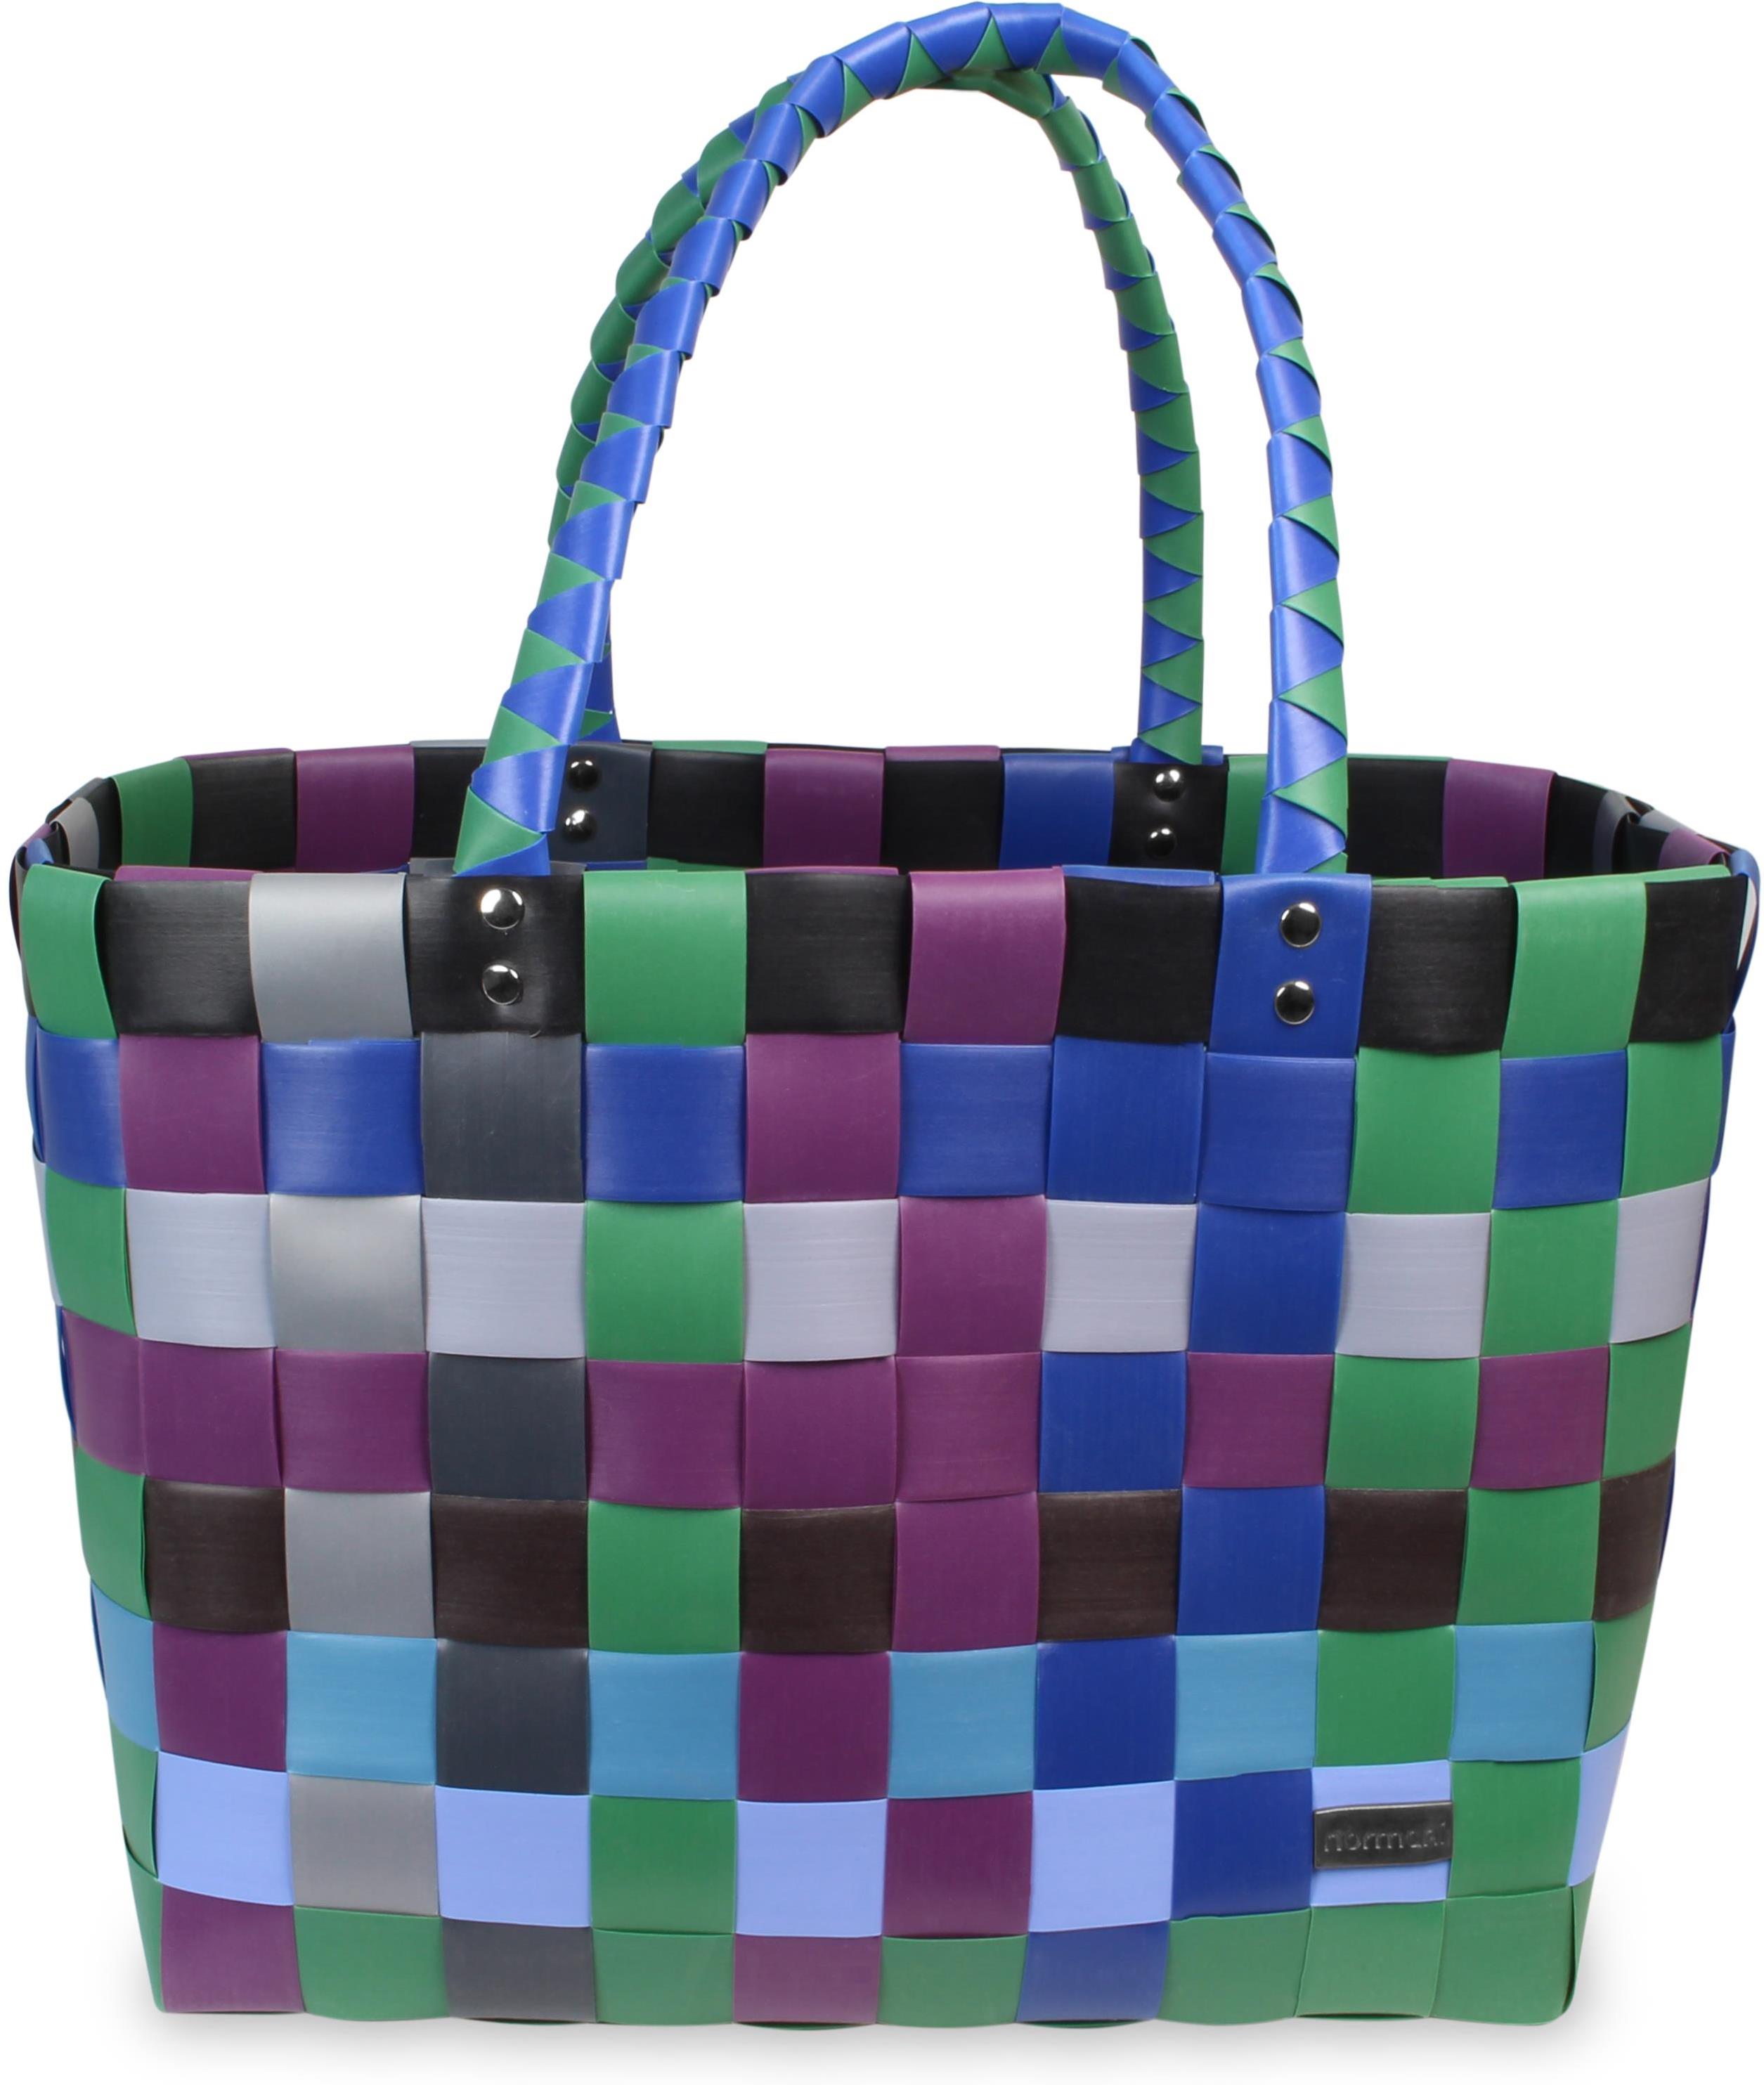 Сумка шоппер normani Einkaufskorb Einkaufstasche aus Kunststoff, цвет Tao